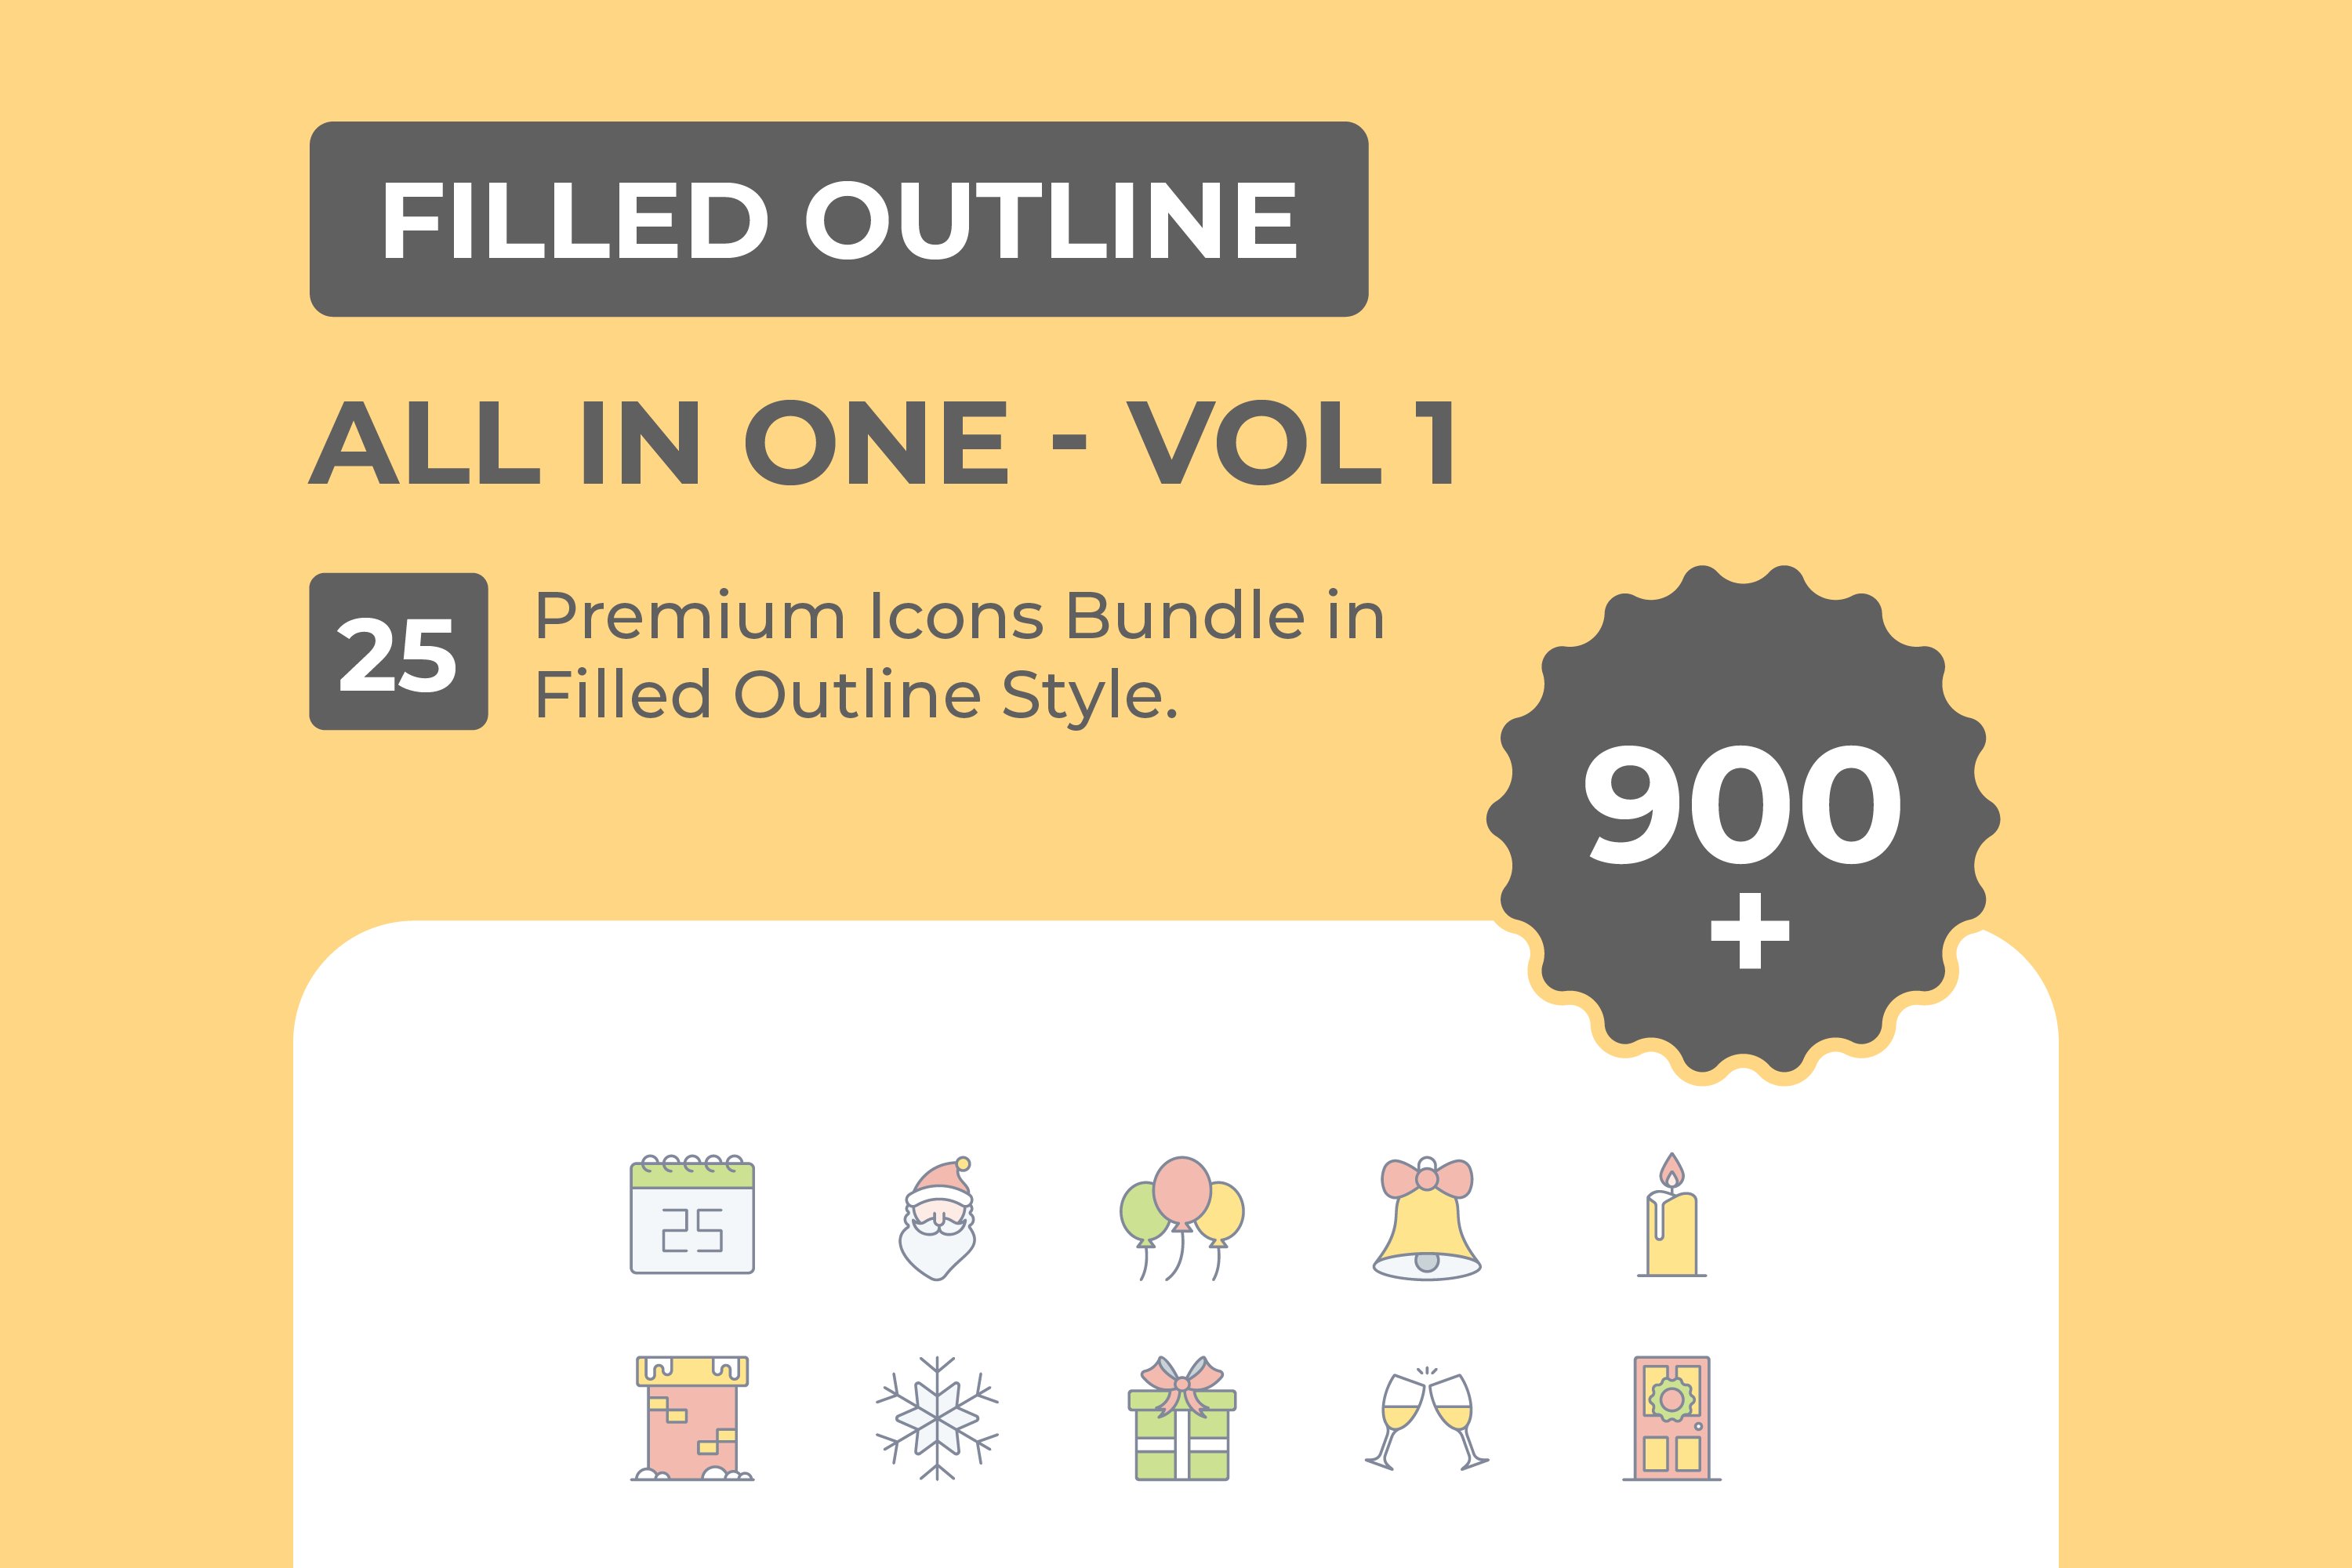 Filled Outline Icons Mega Bundle cover image.